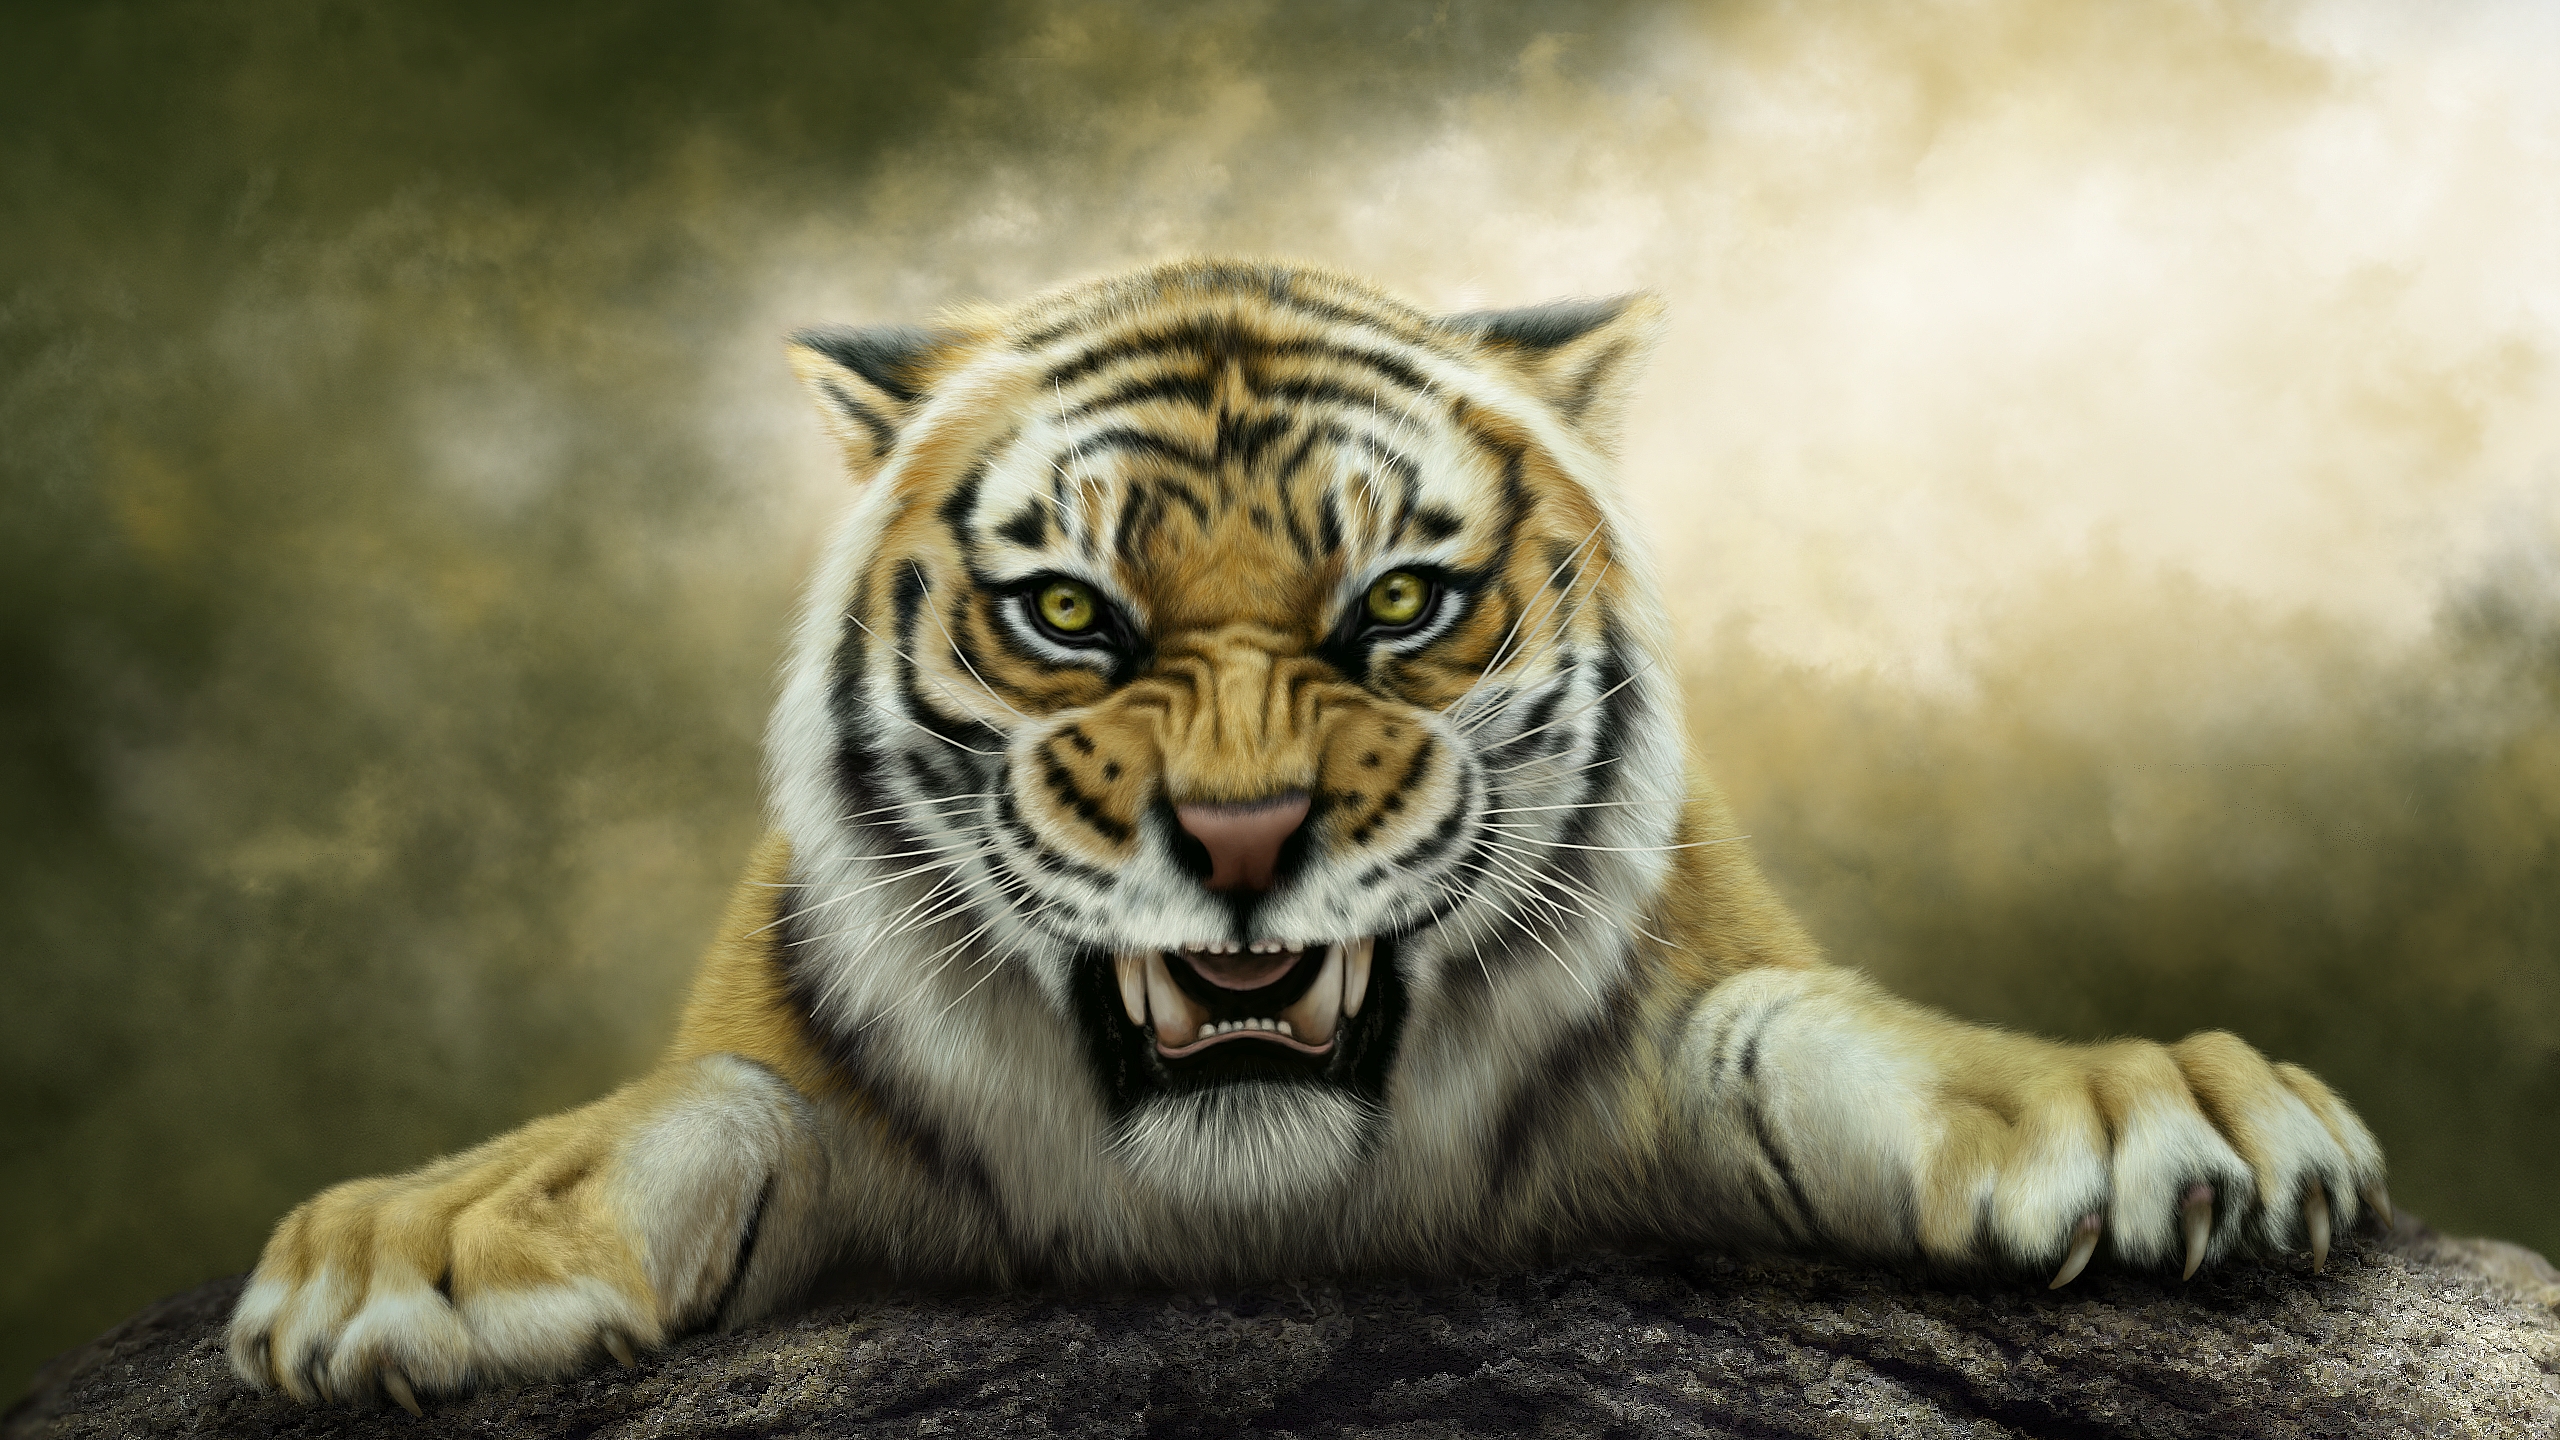 Wallpaper Tiger, Artwork, Roaring, Animals, #244